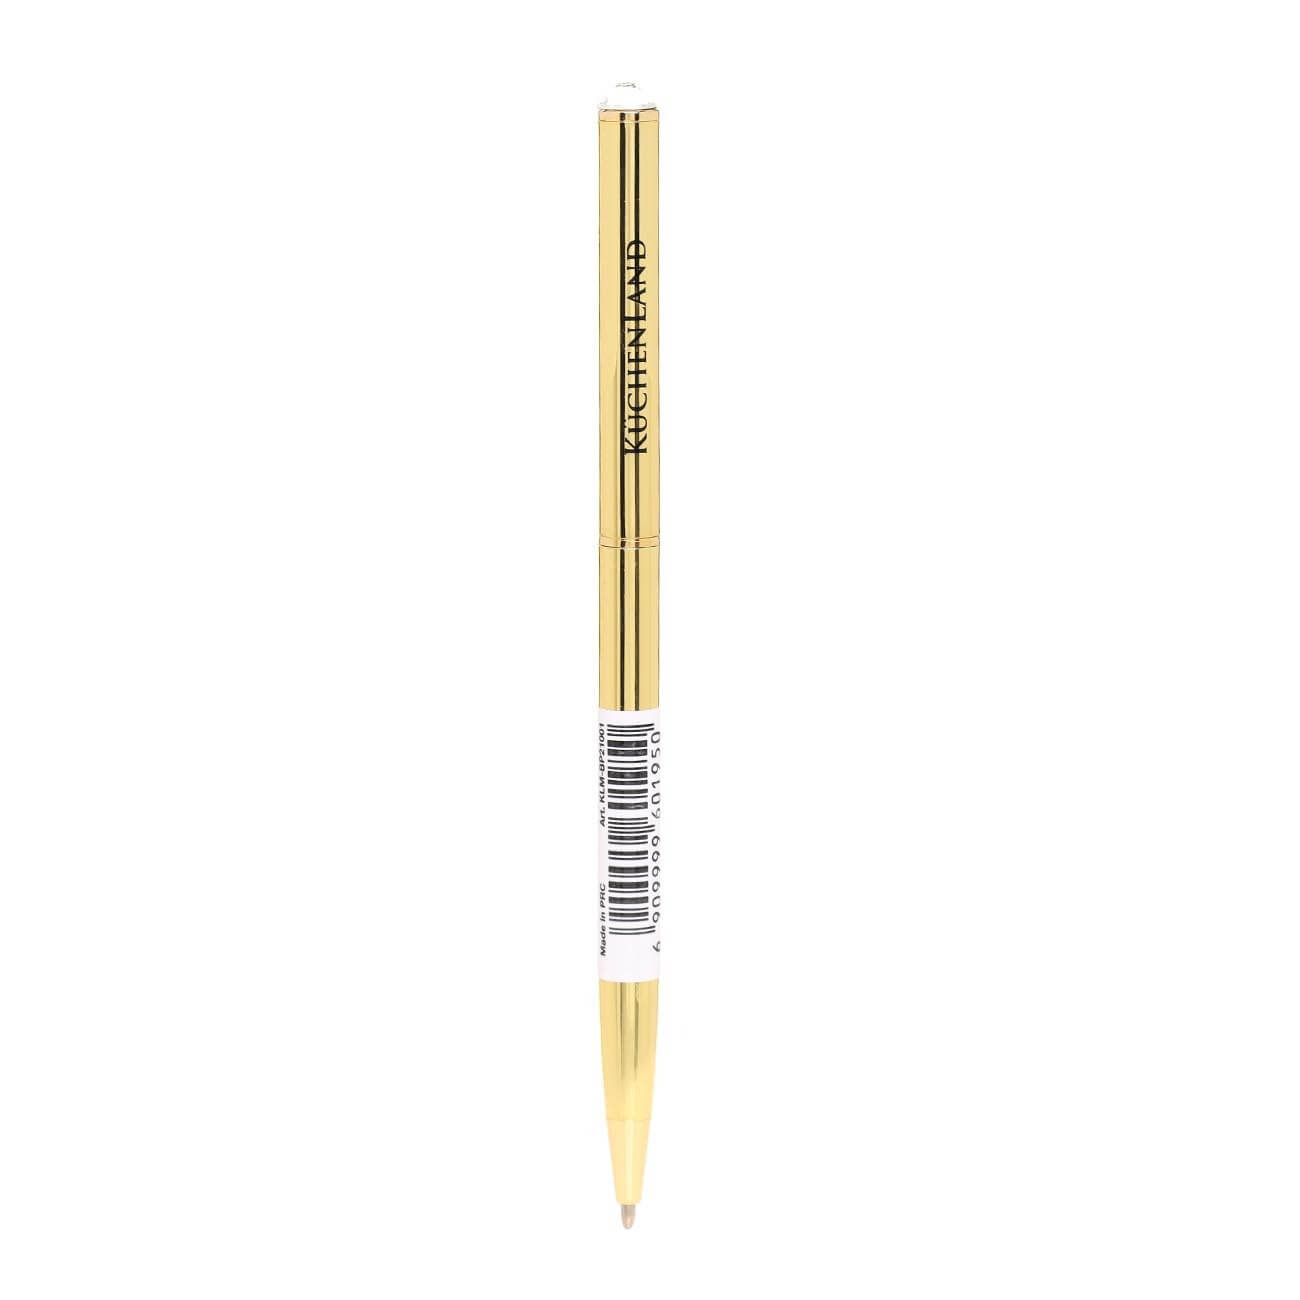 Ручка шариковая, 13 см, с кристаллом, металл, золотистая, Draw factory brass ручка роллерная